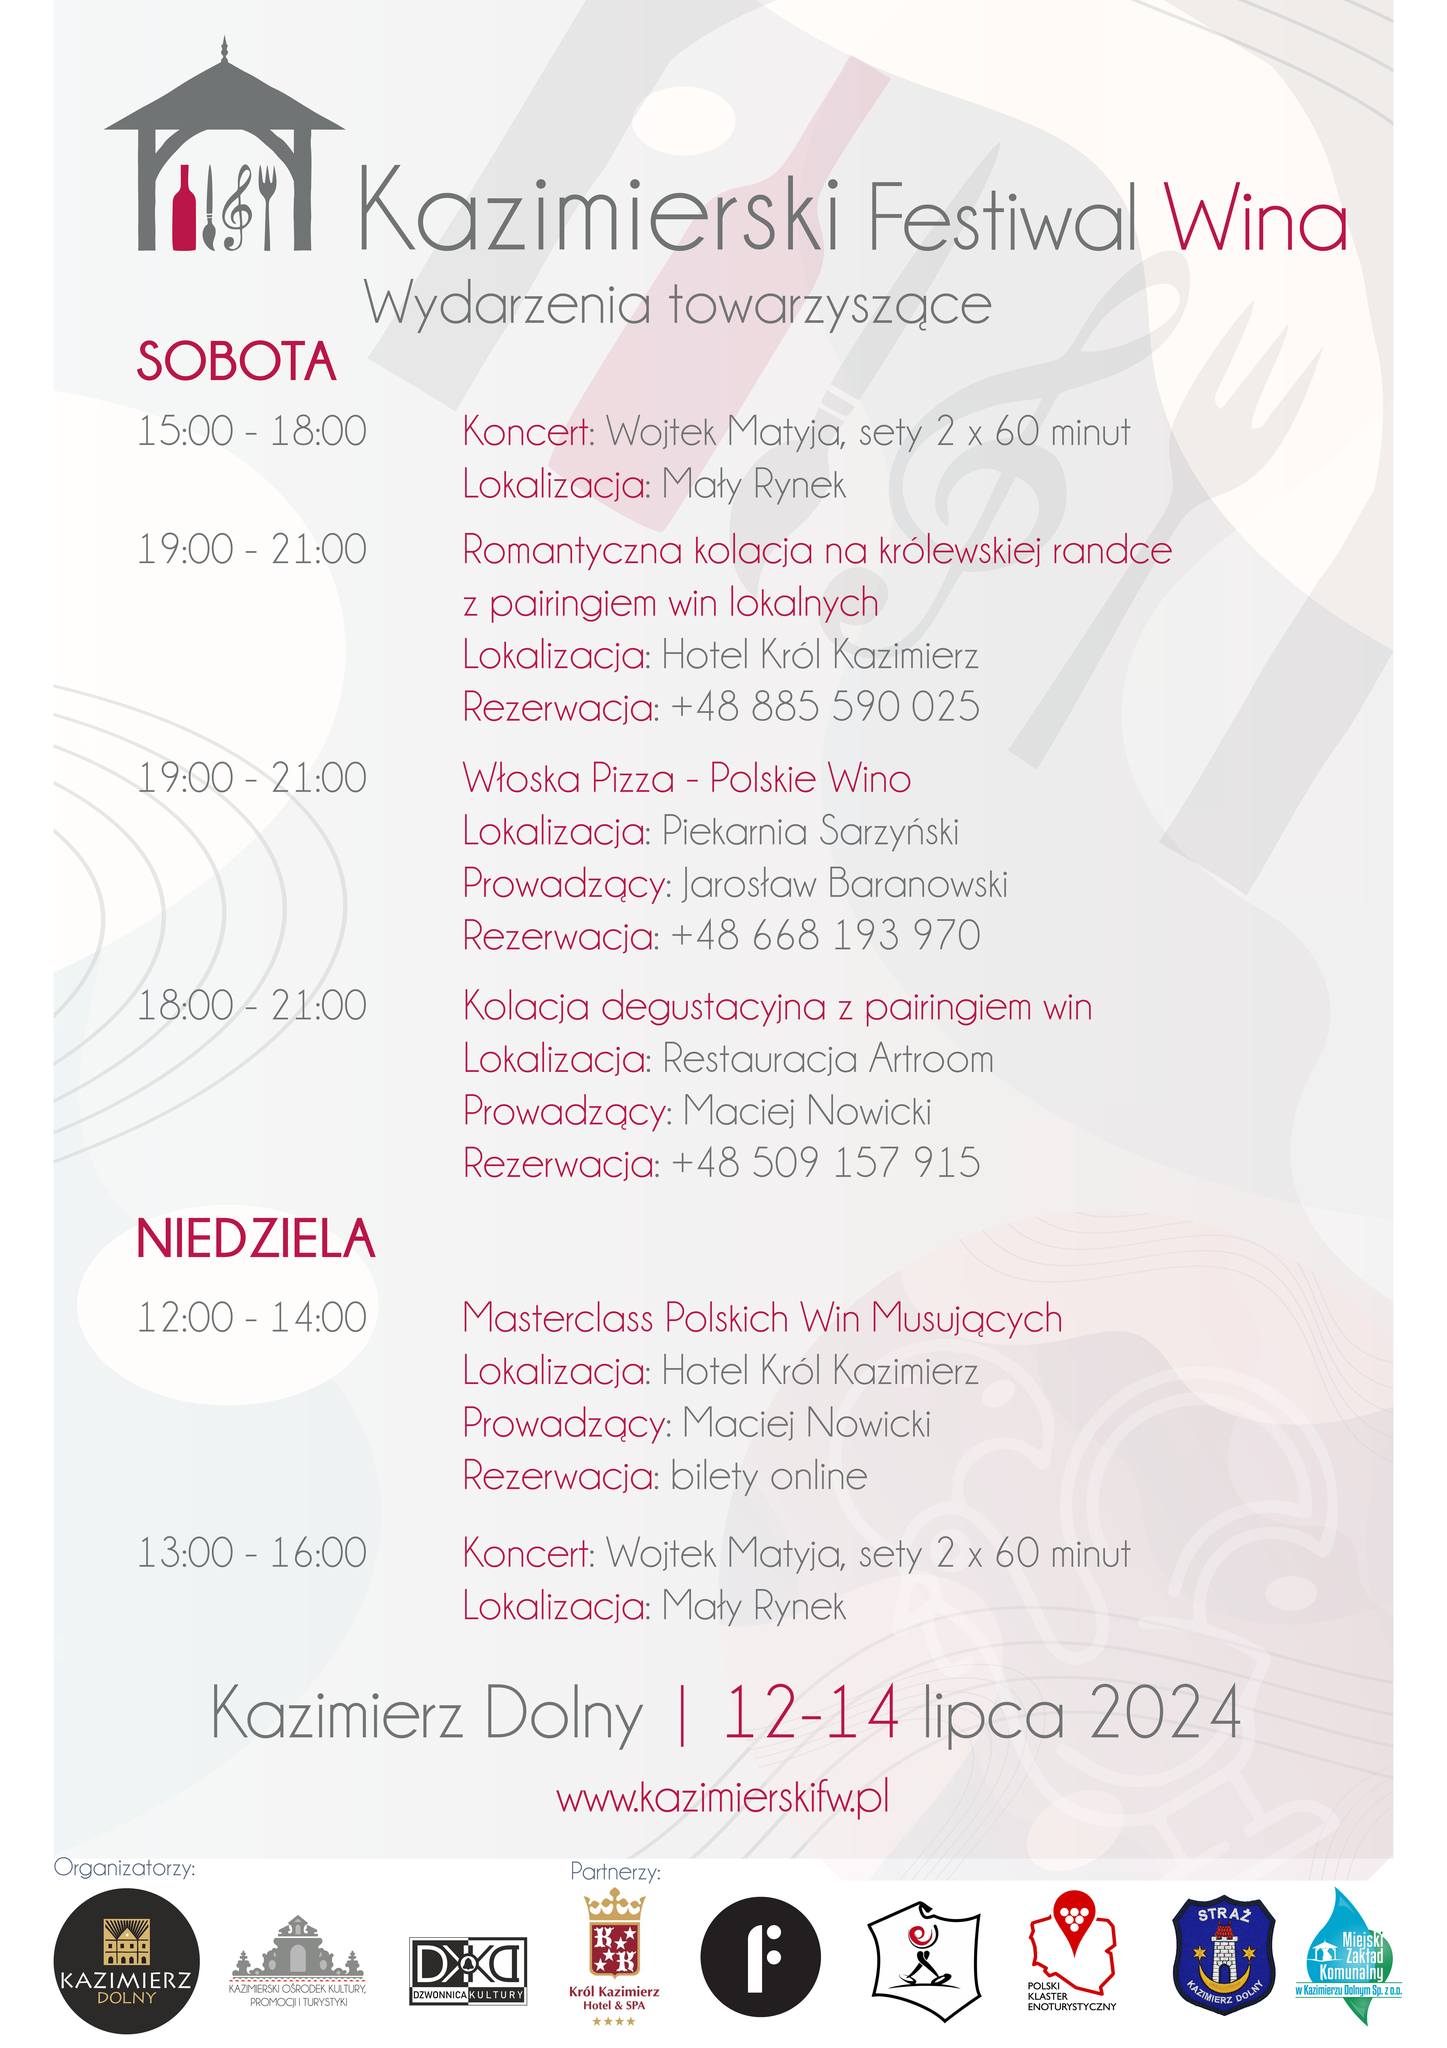 Kazimierski Festiwal Wina 2024 - Program wydarzeń